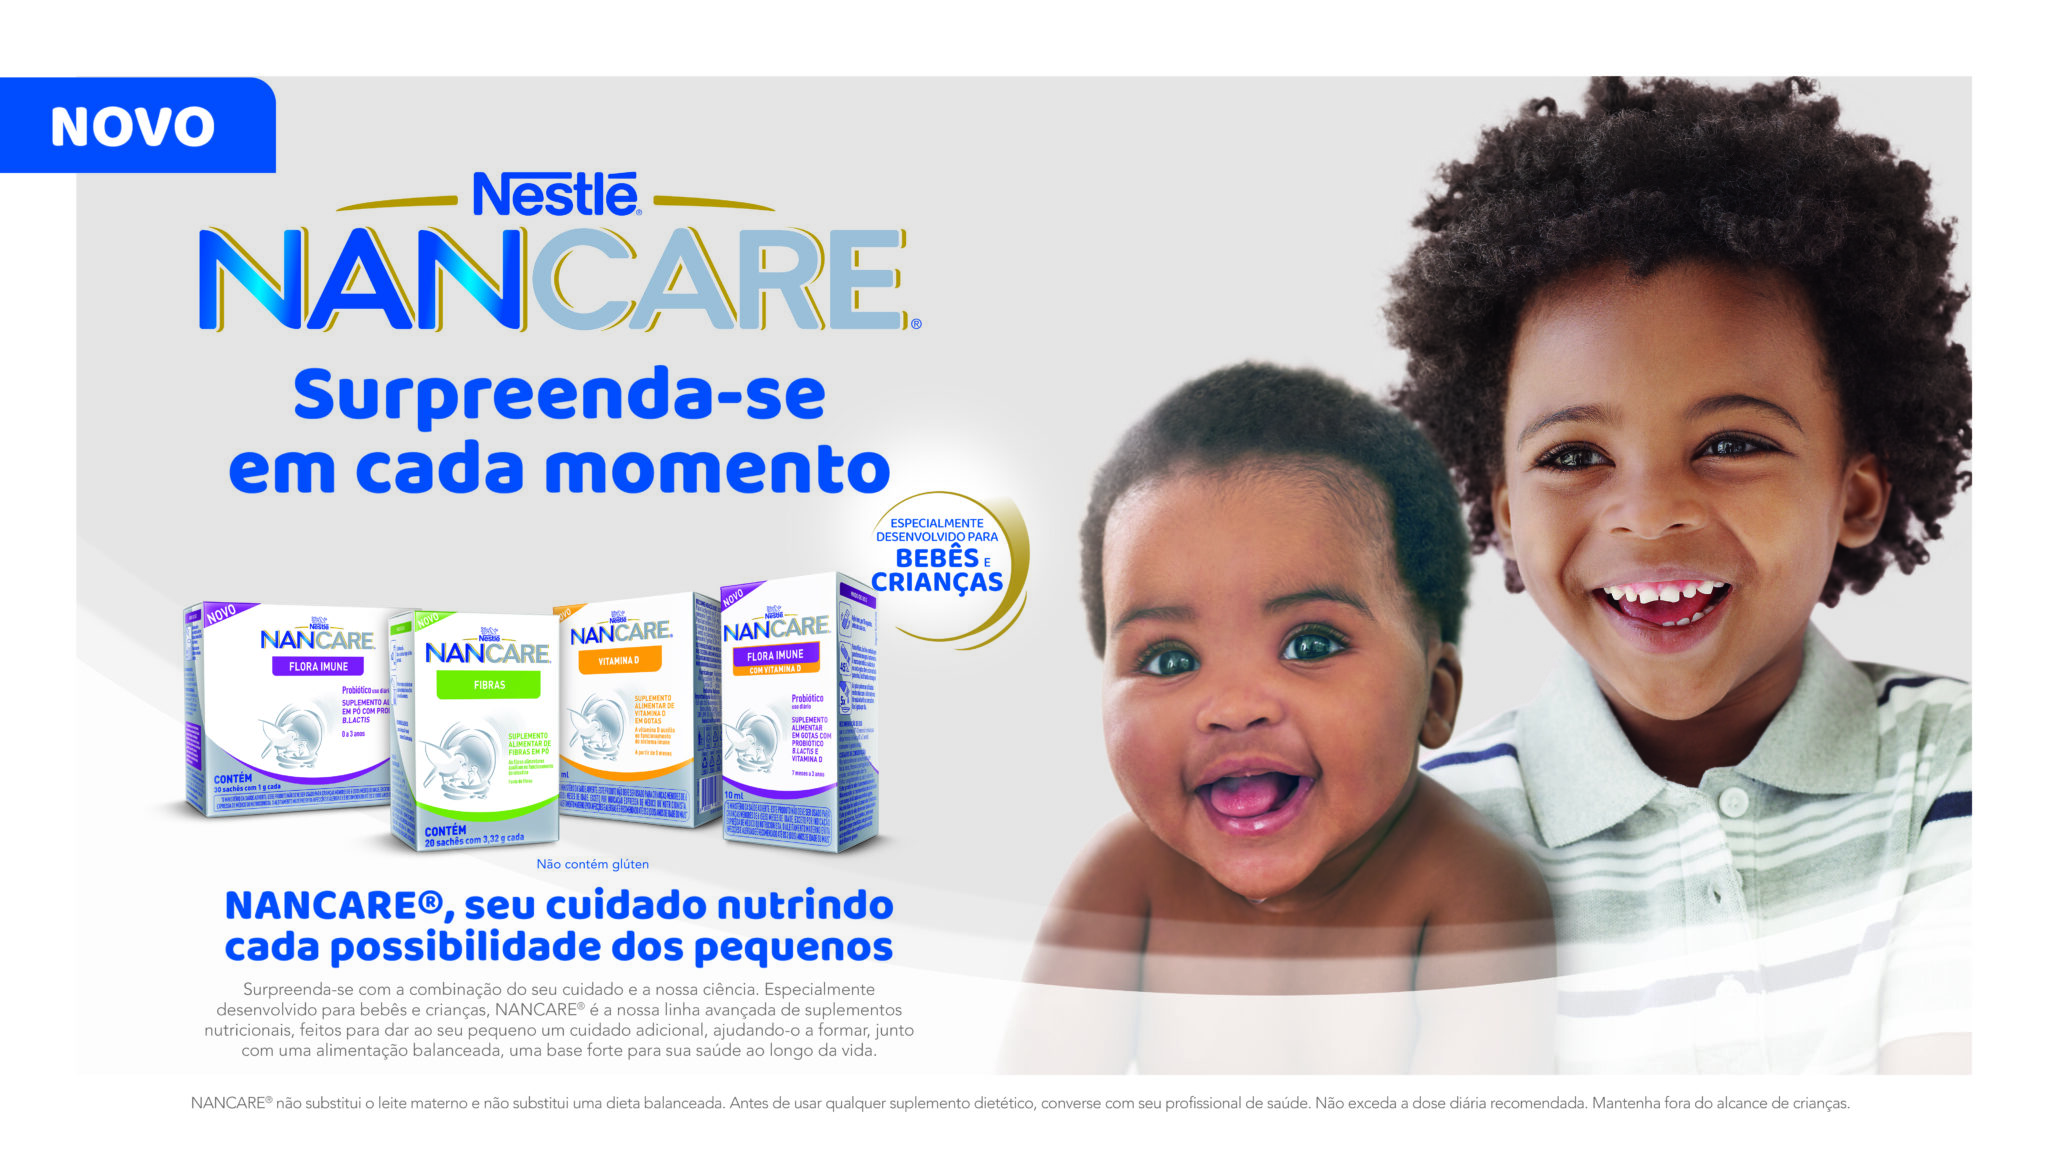 Nestlé lança linha Nancare no Brasil